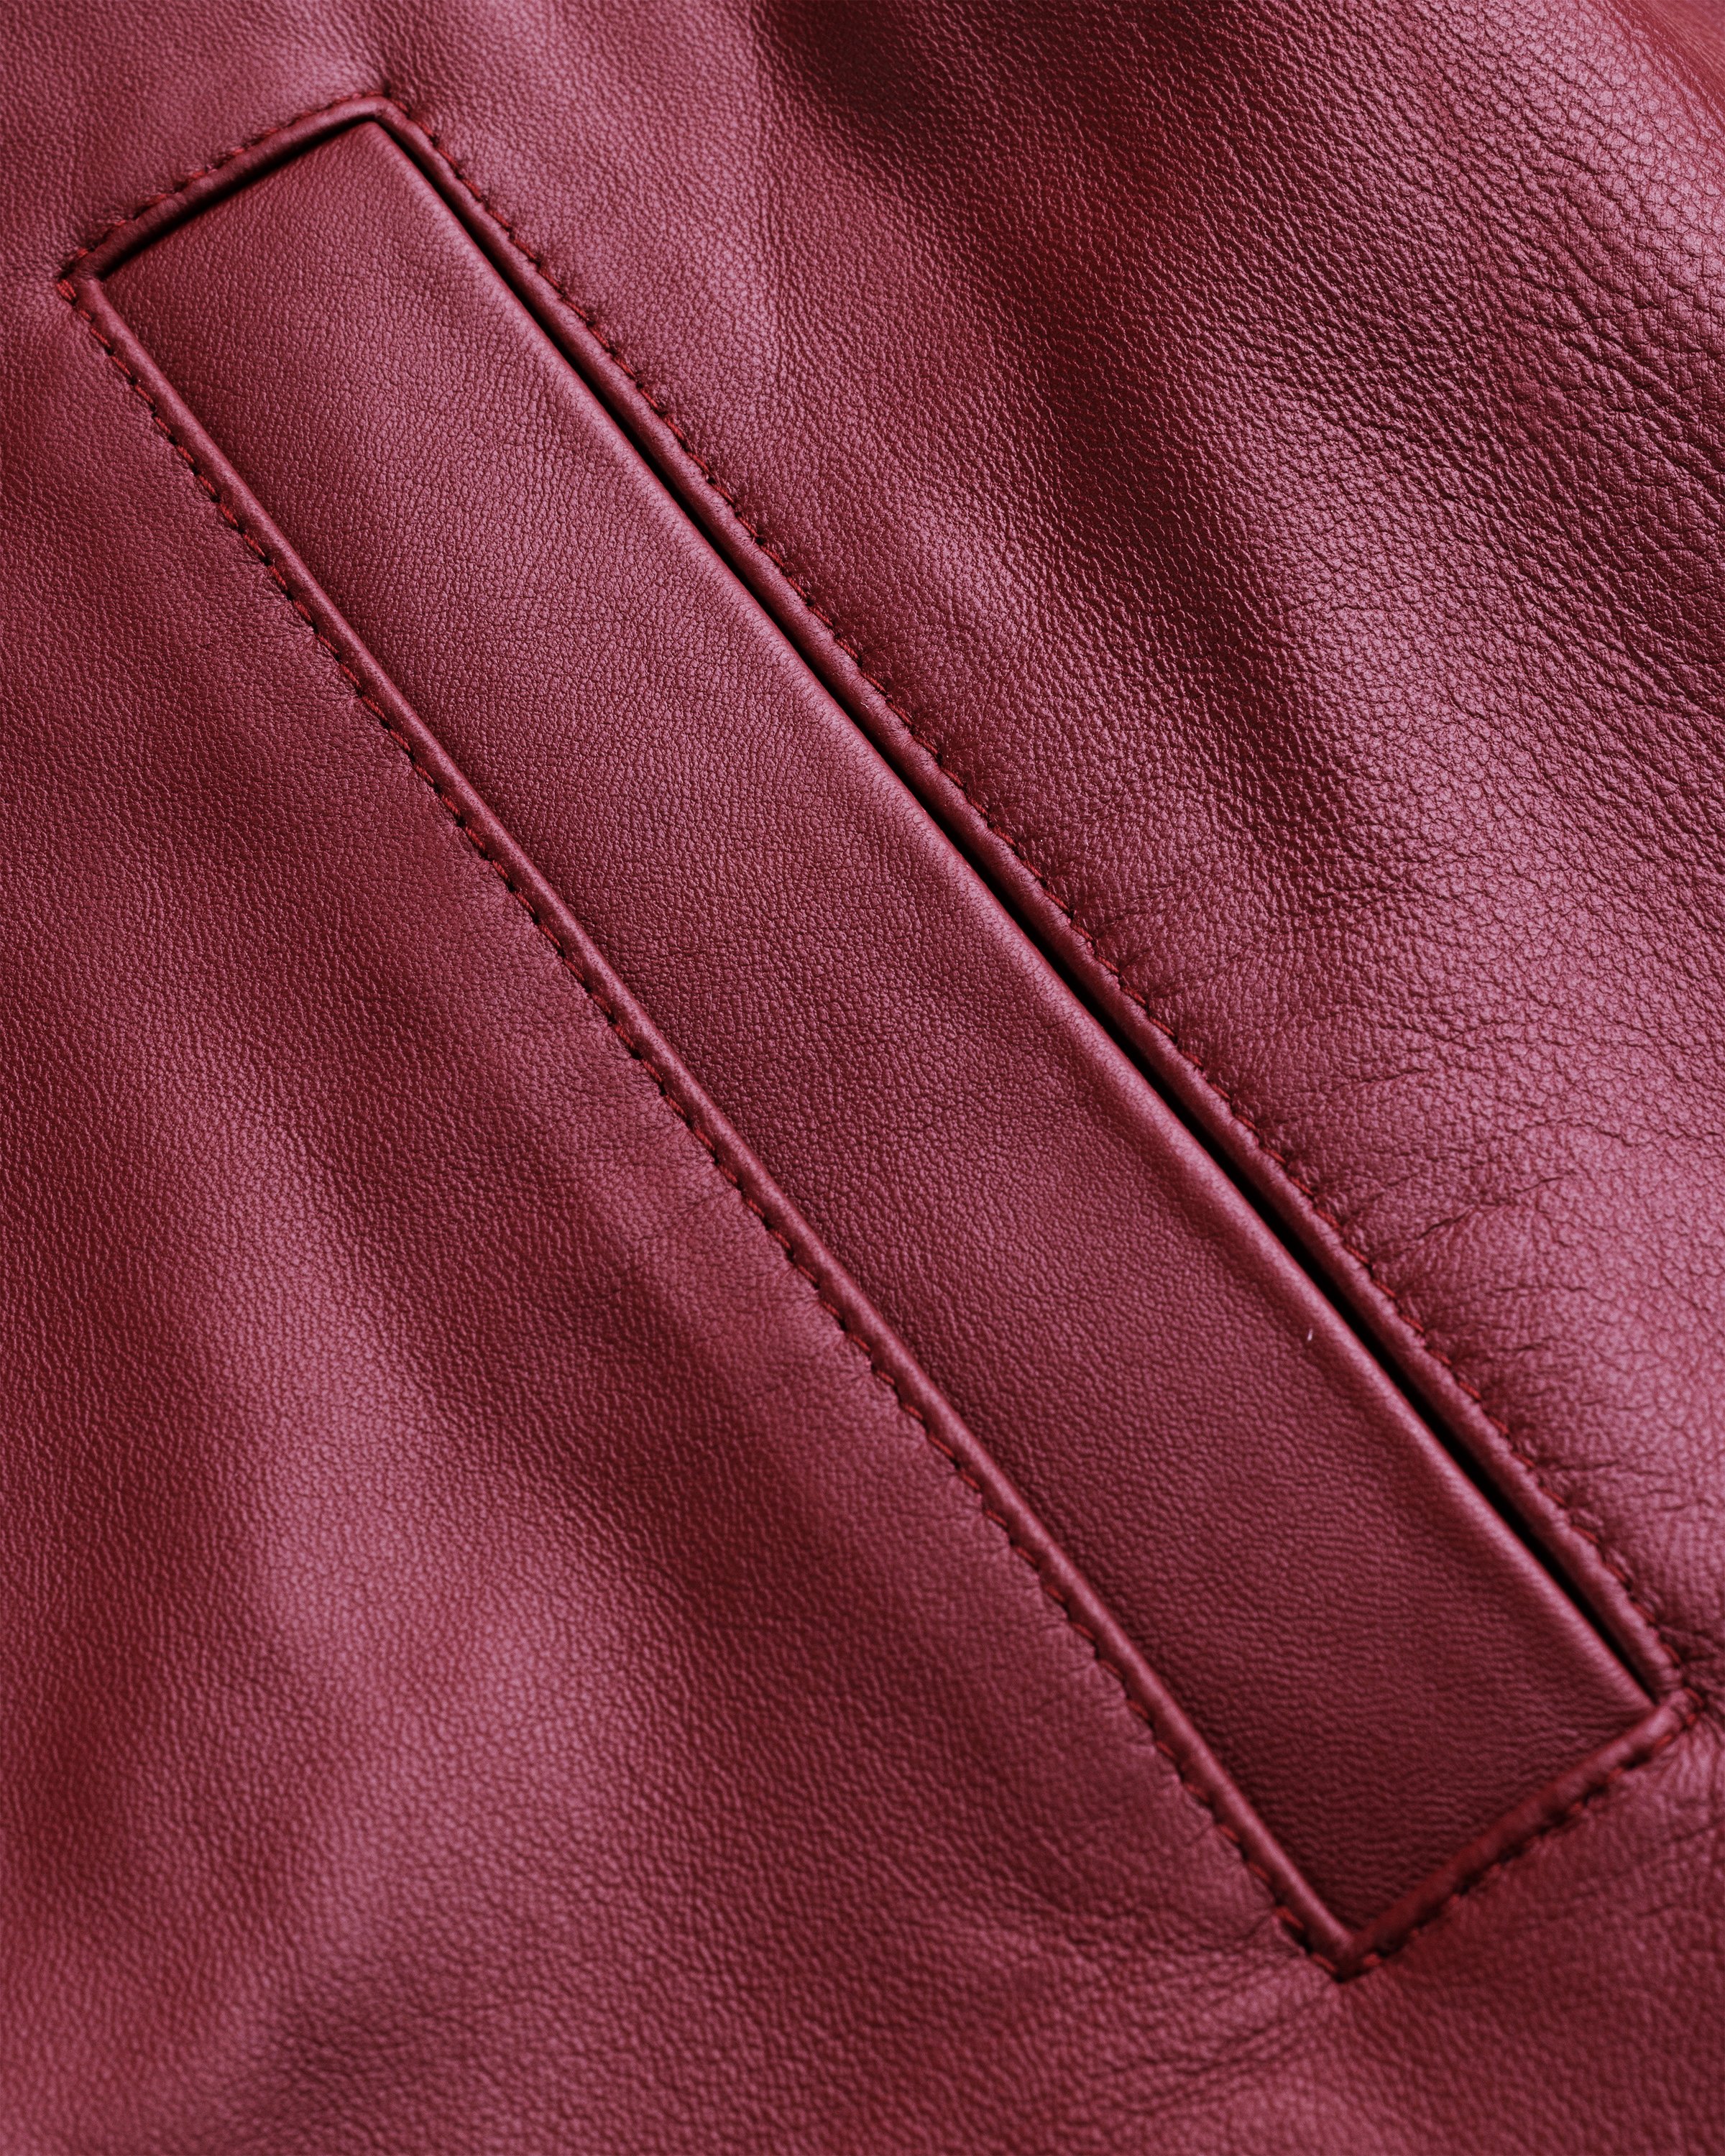 Highsnobiety HS05 - Leather Jacket Burgundy - Clothing - Burgundy - Image 10